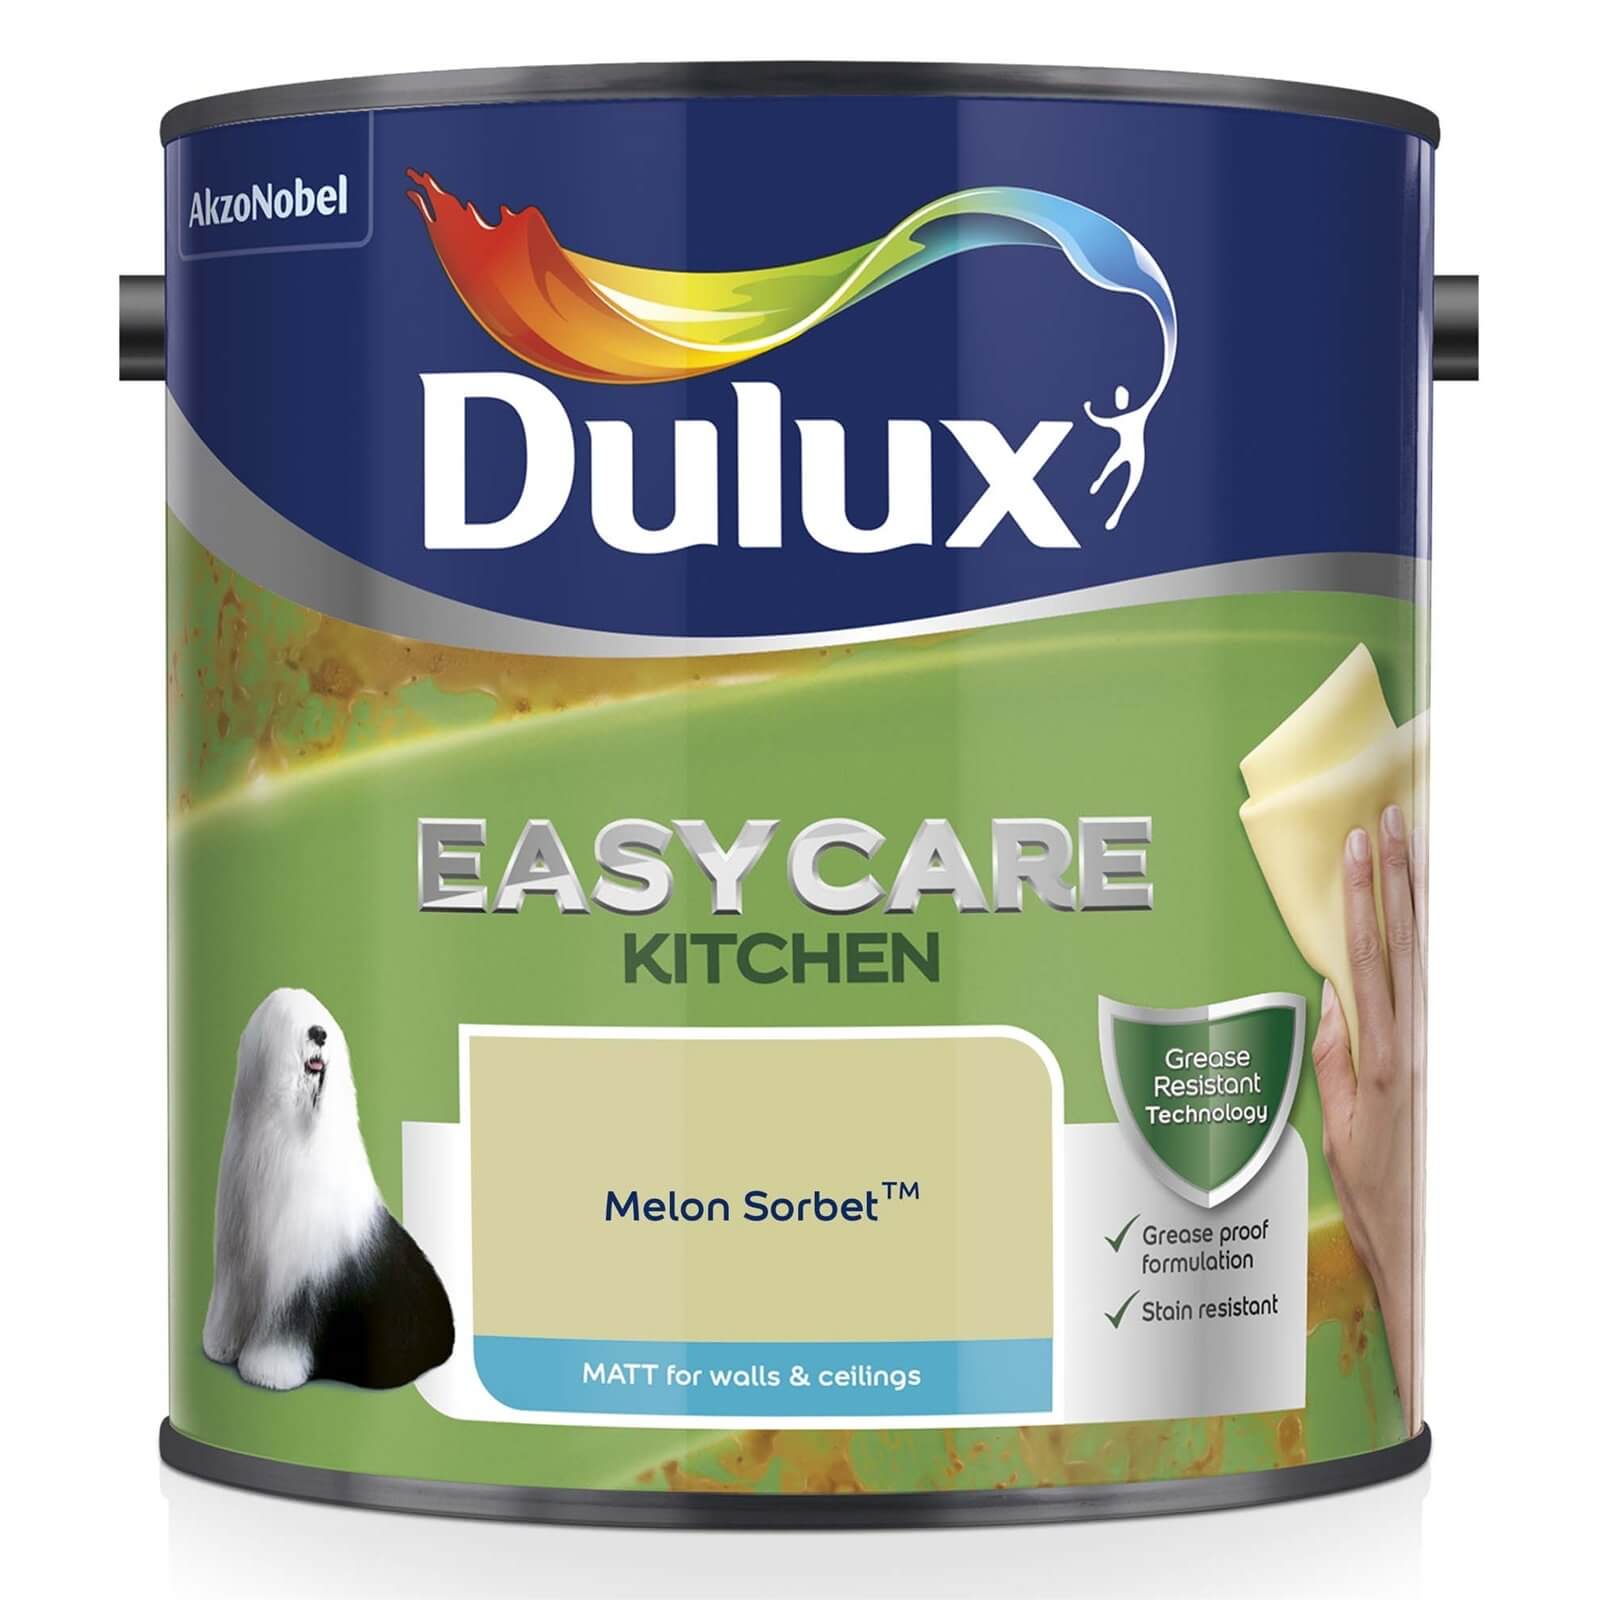 Dulux Easycare Kitchen Melon Sorbet - Matt Emulsion Paint - 2.5L